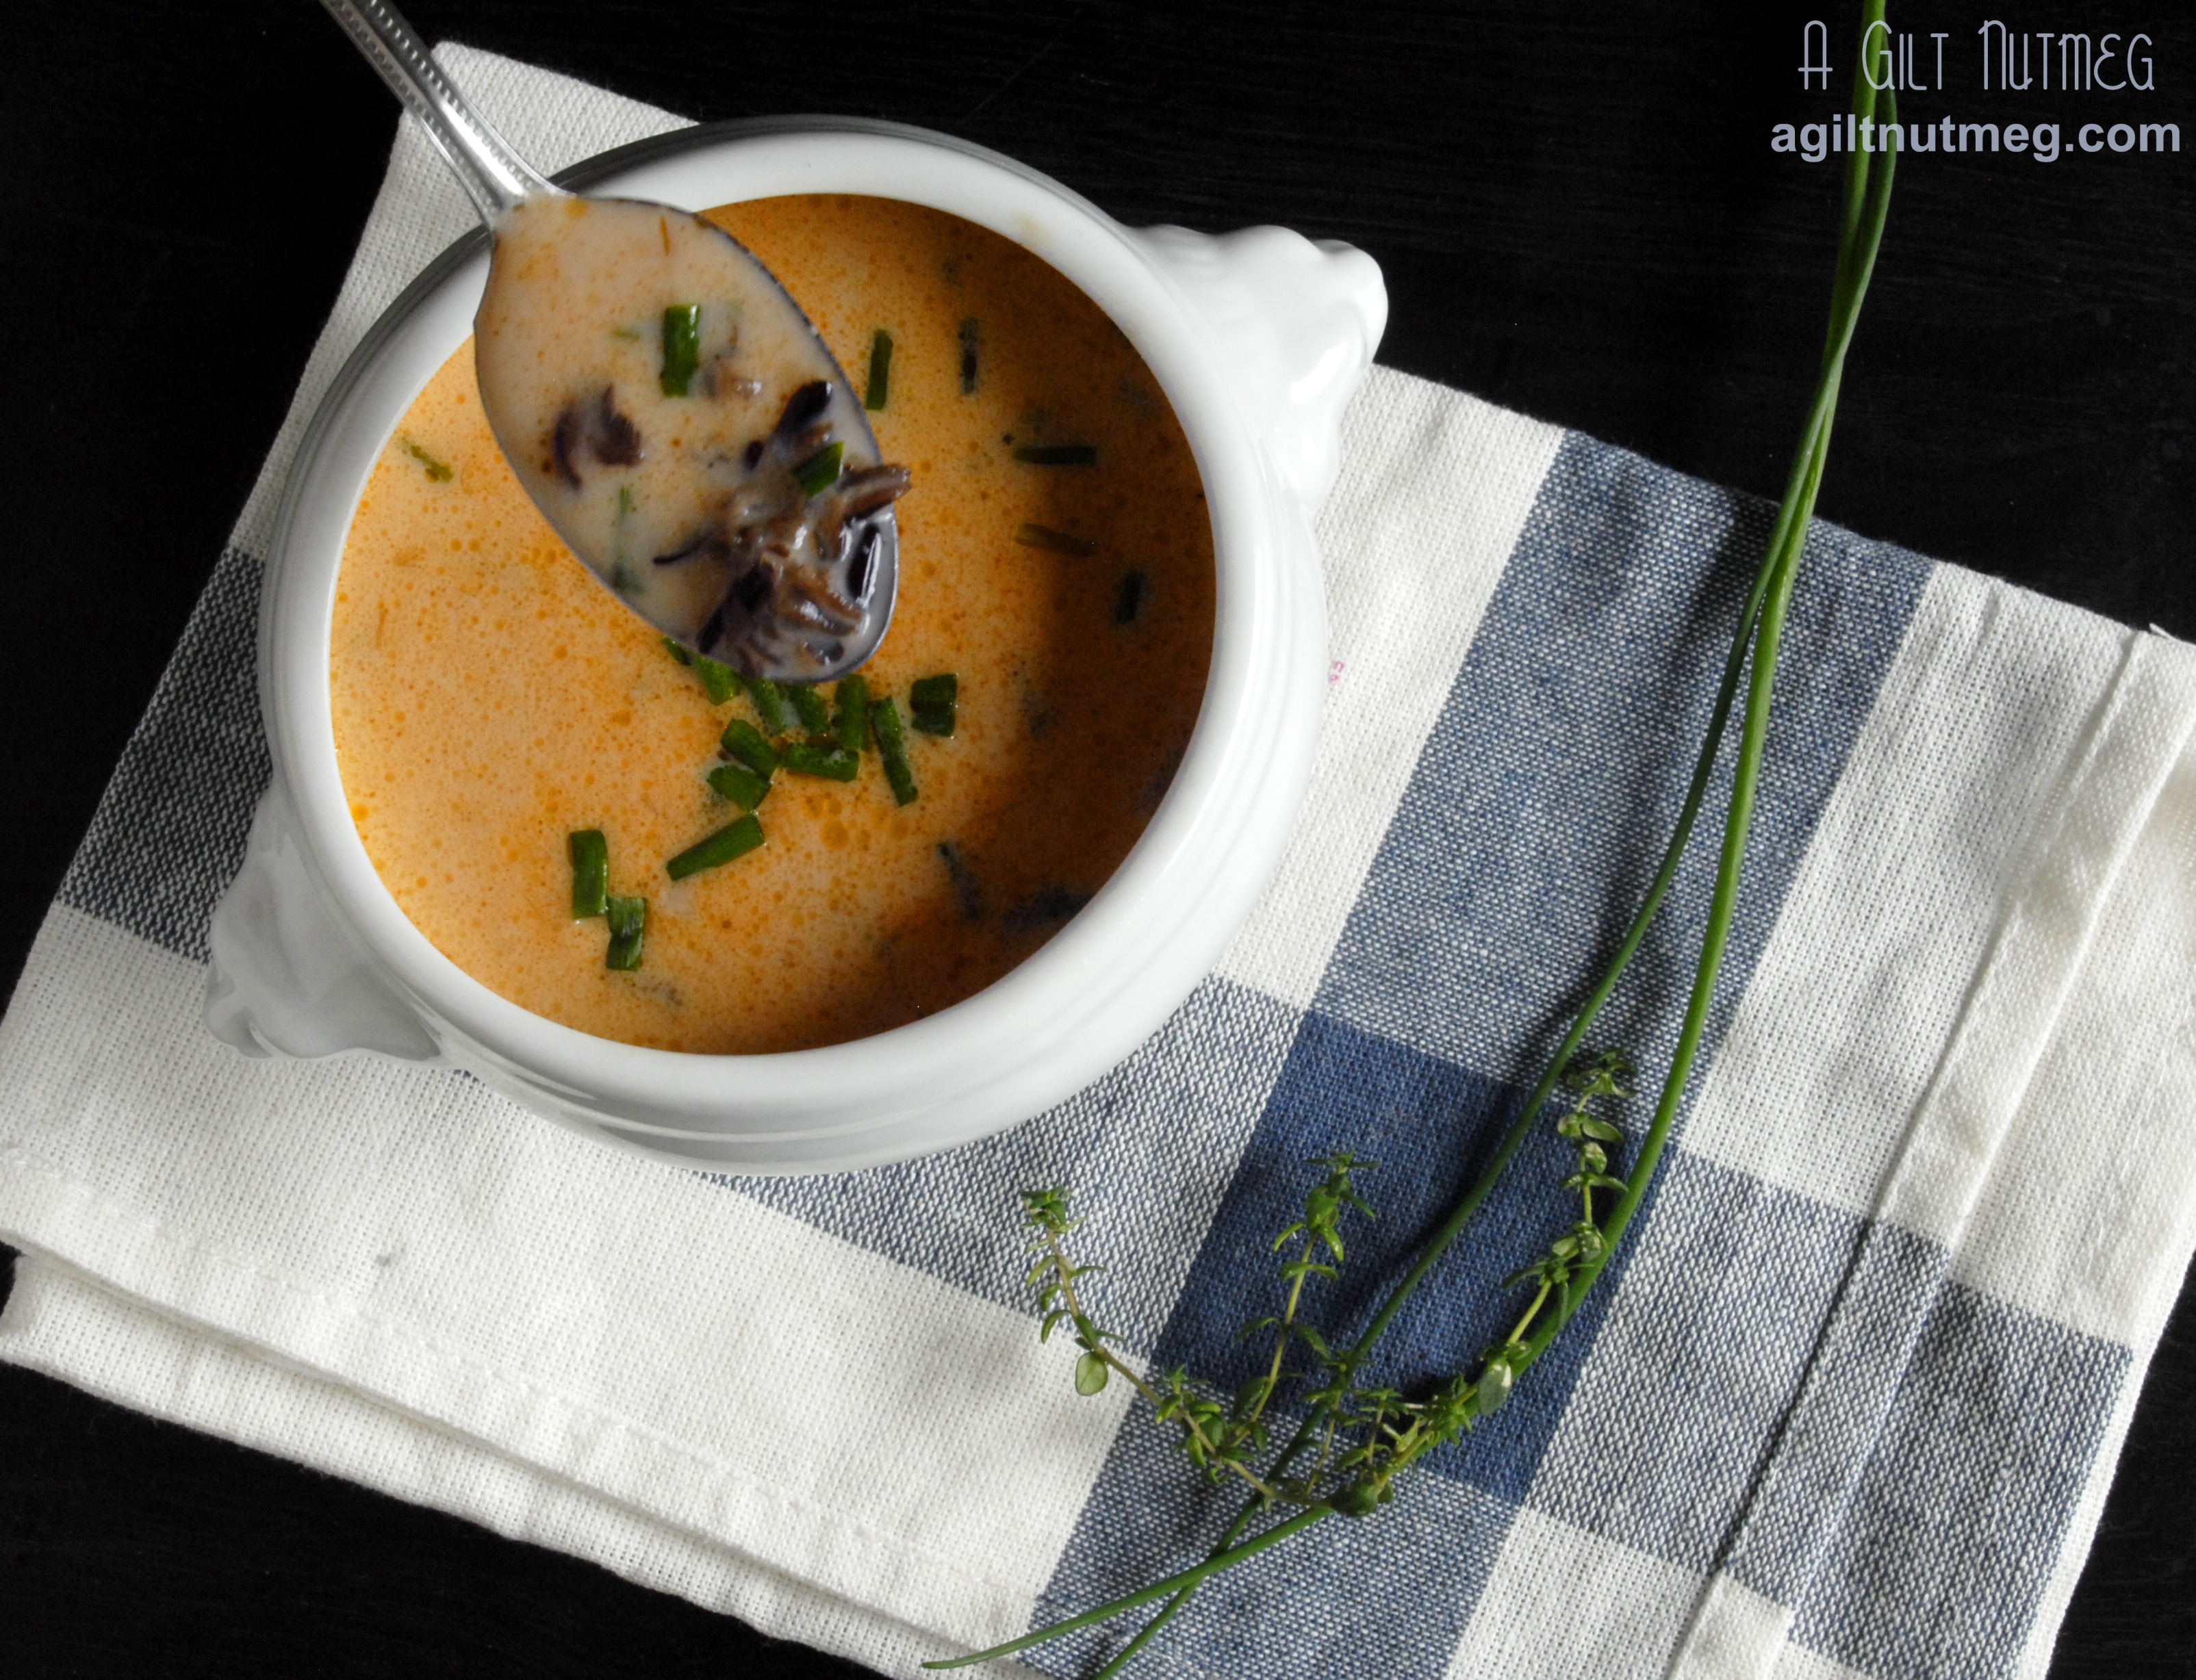 Wild Rice & Mushroom Soup - A Gilt Nutmeg